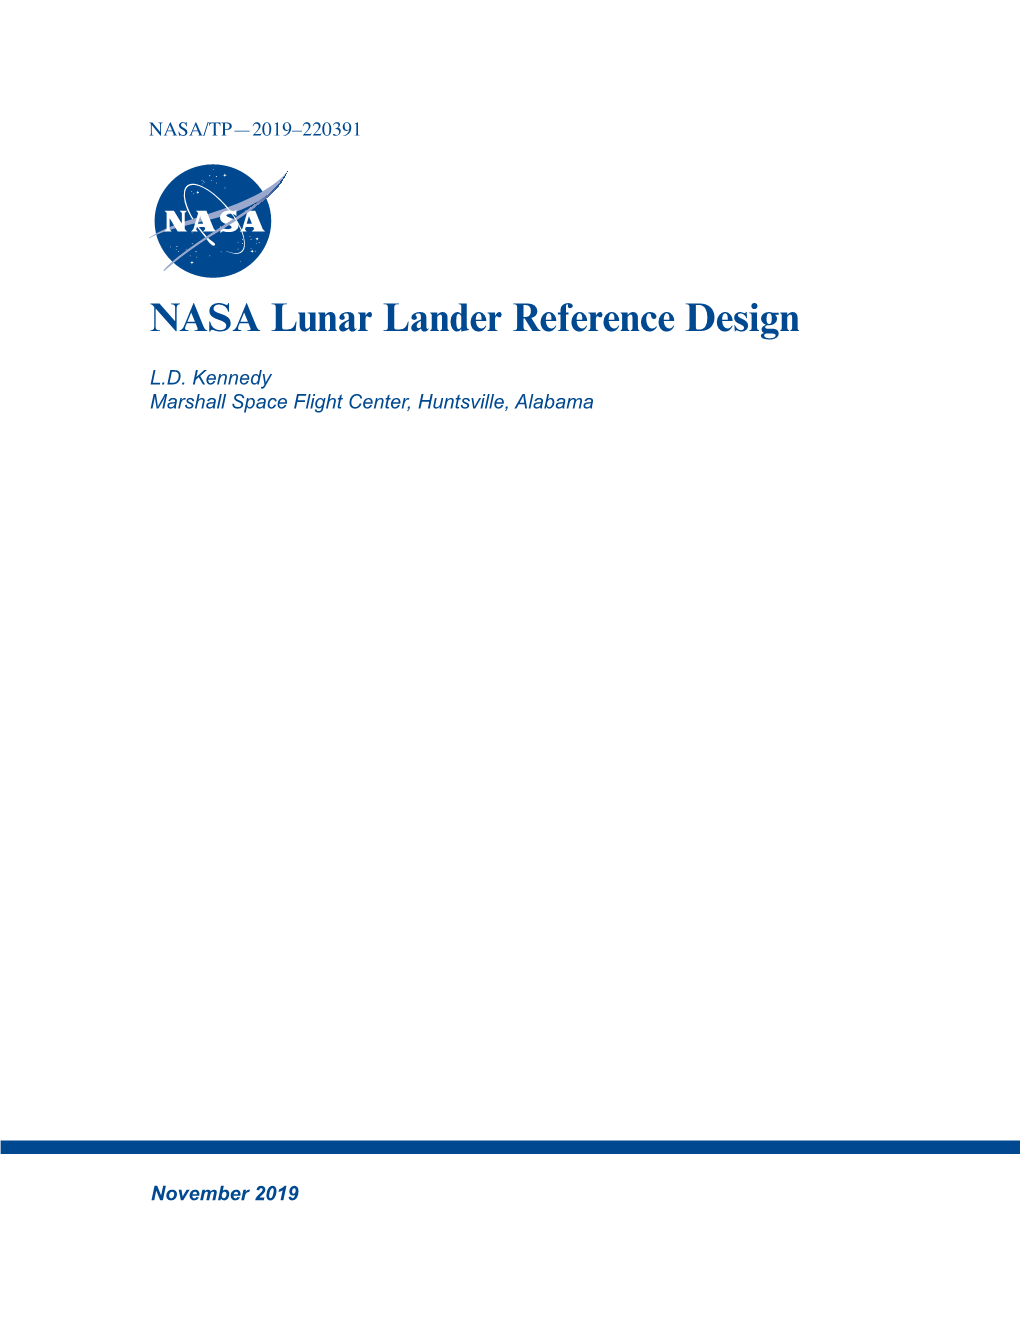 NASA Lunar Lander Reference Design